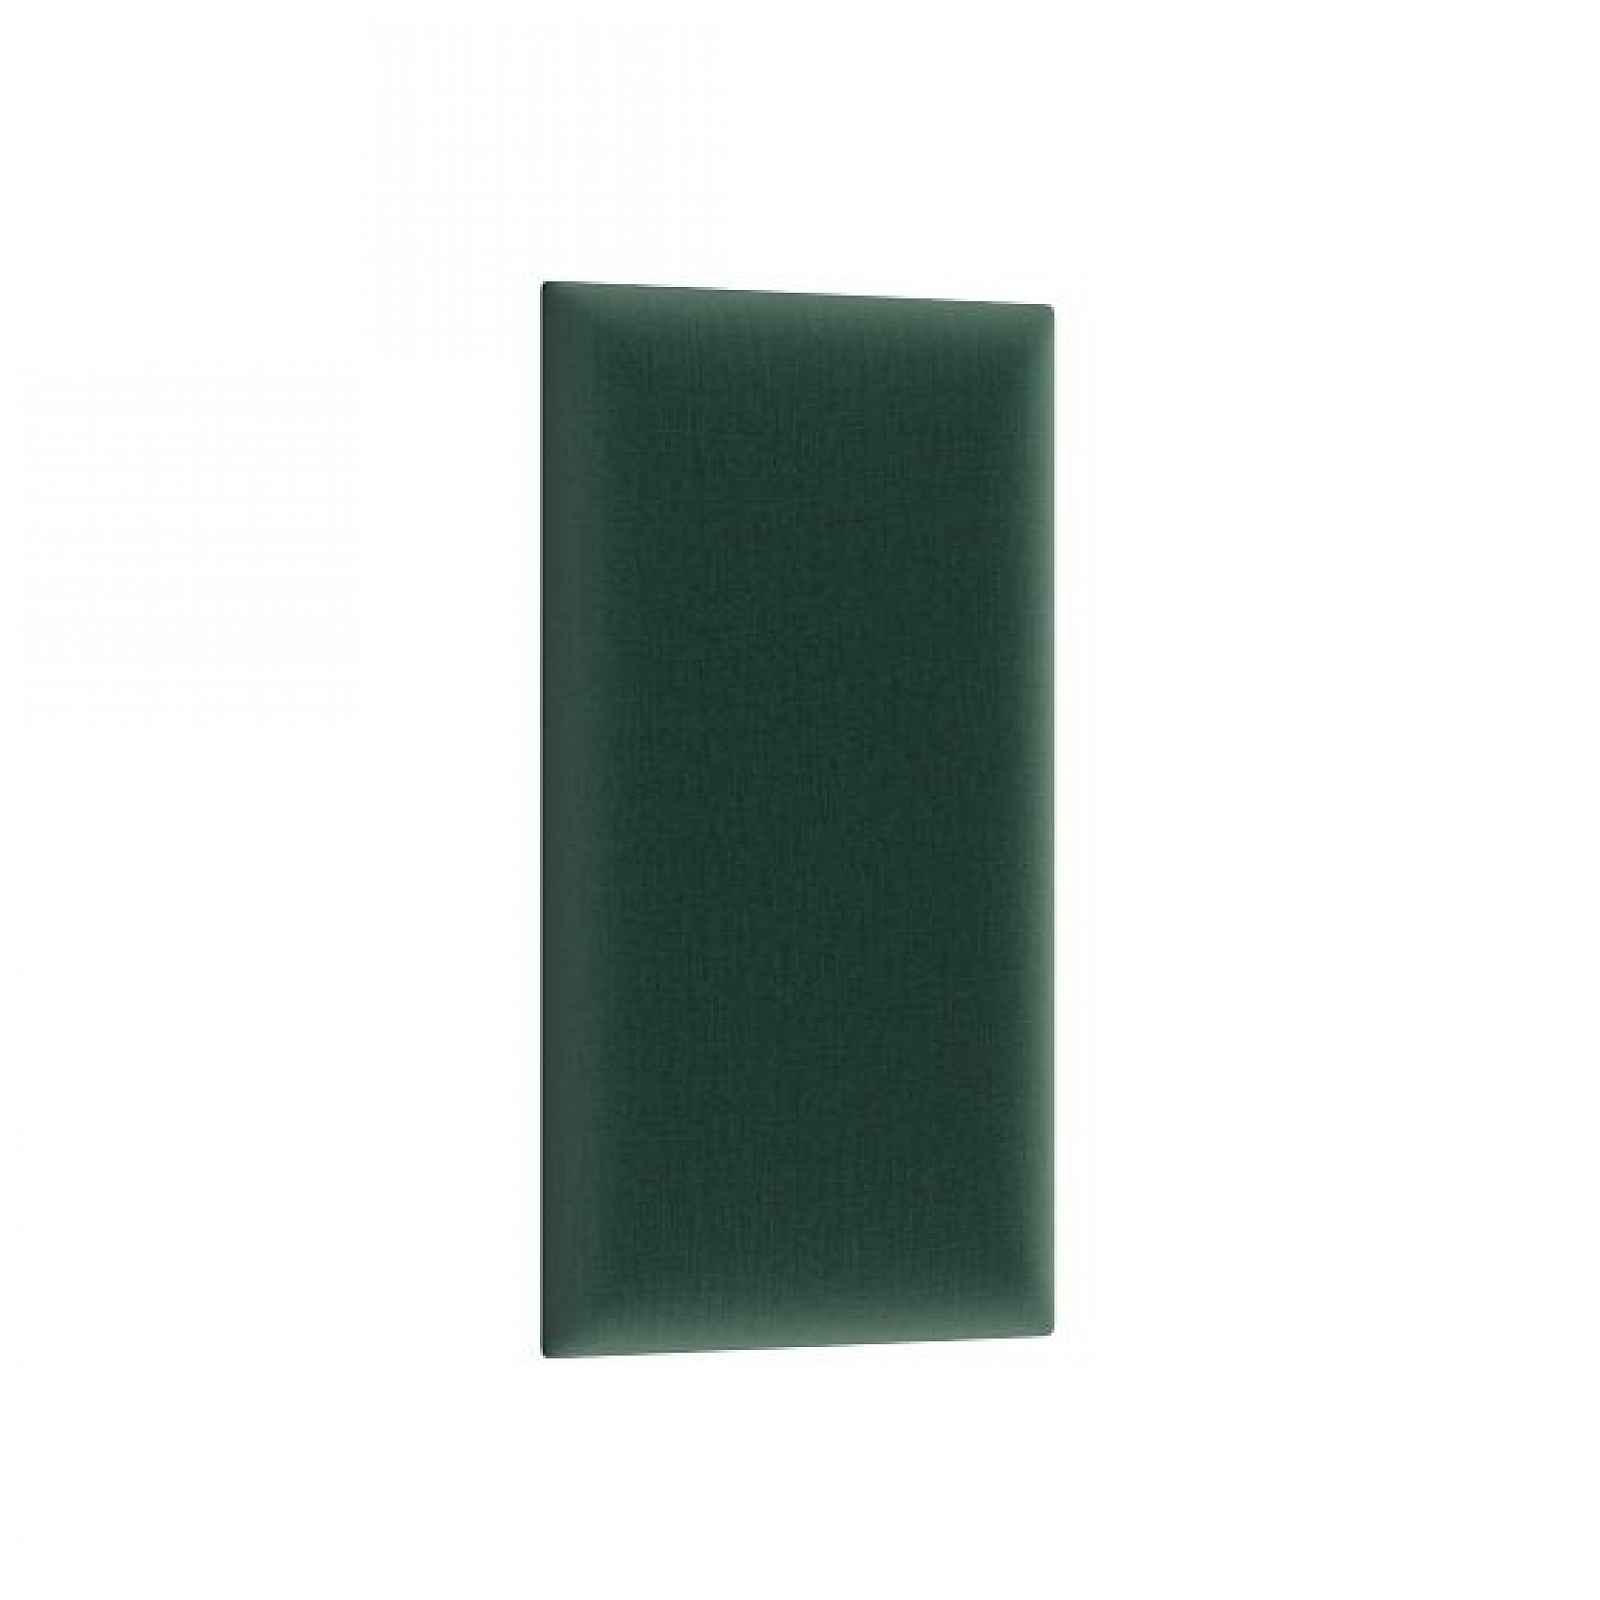 Dekorační nástěnný panel MATEO 60x30 cm, zelená